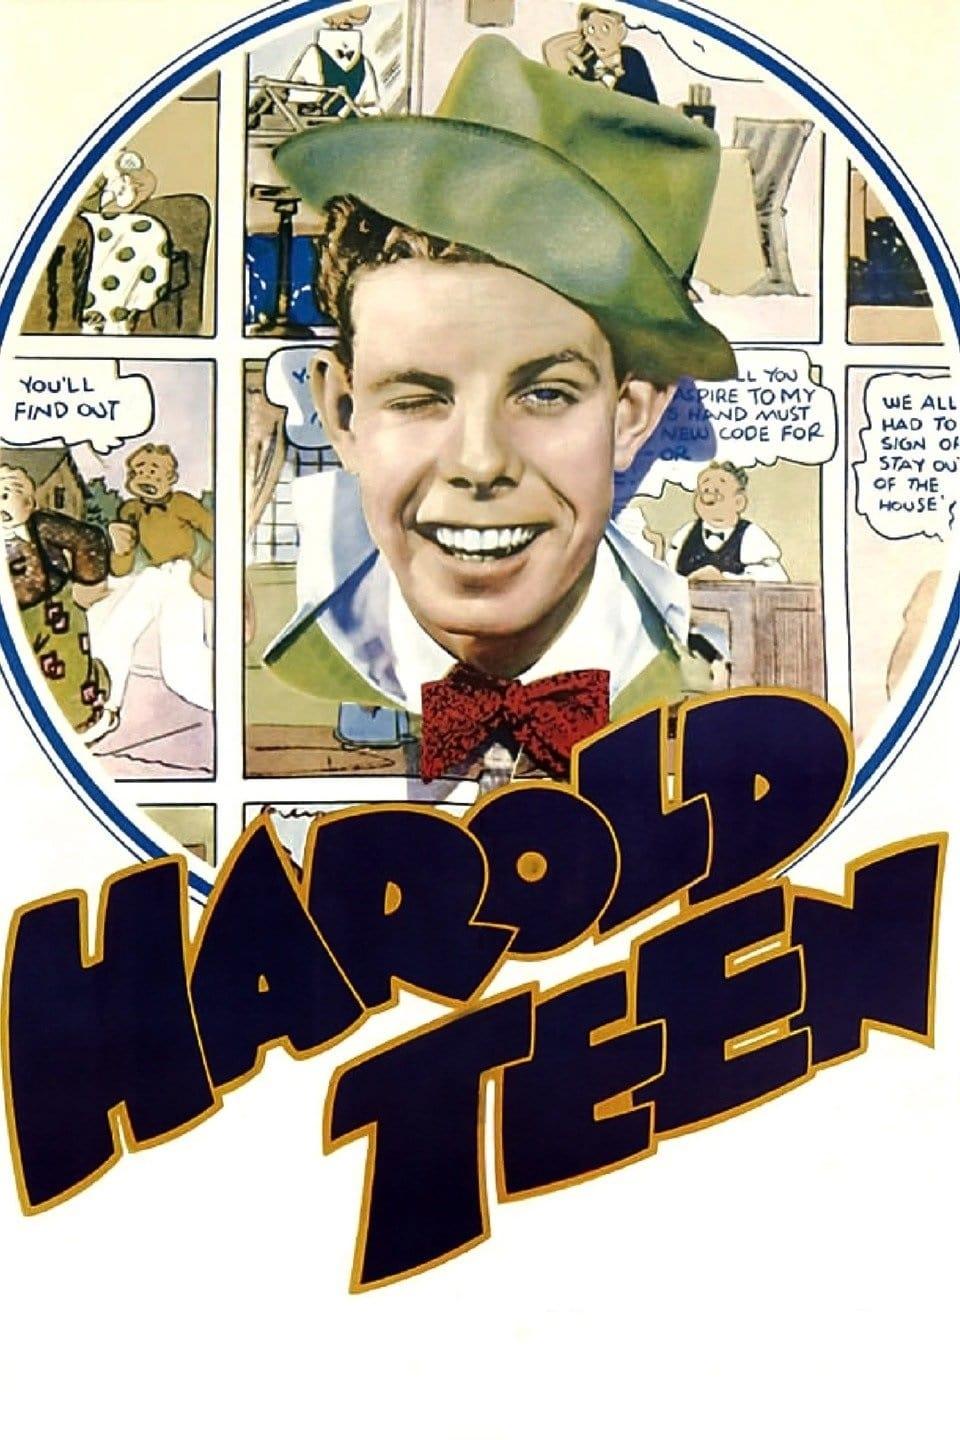 Harold Teen poster